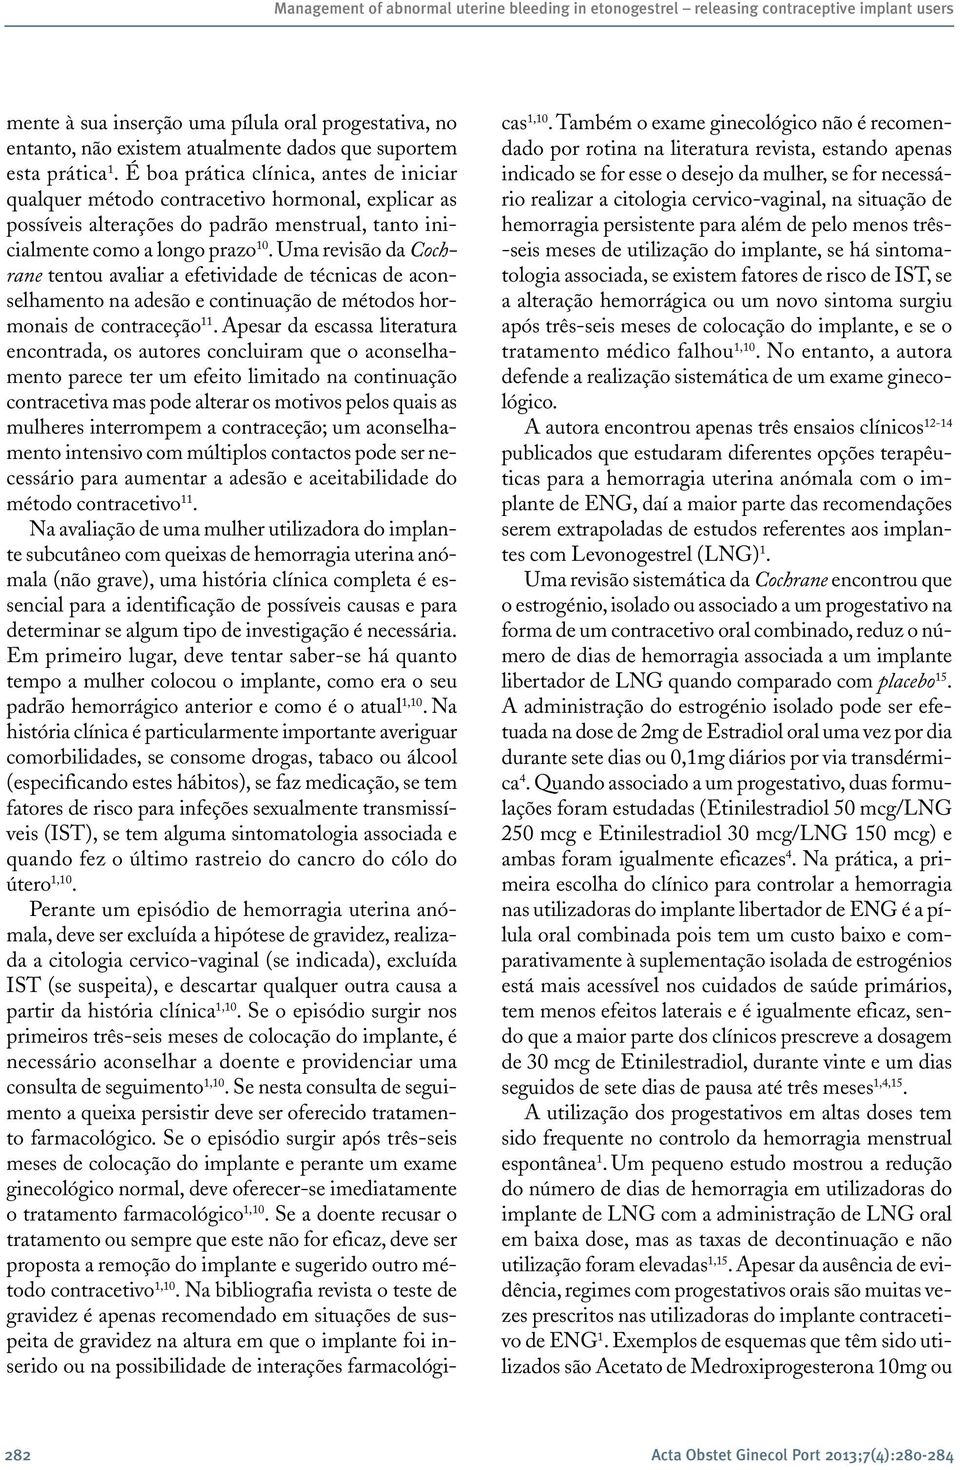 Uma revisão da Cochrane tent avaliar a efetividade de técnicas de aconselhamento na adesão e continuação de métodos hormonais de contraceção 11.